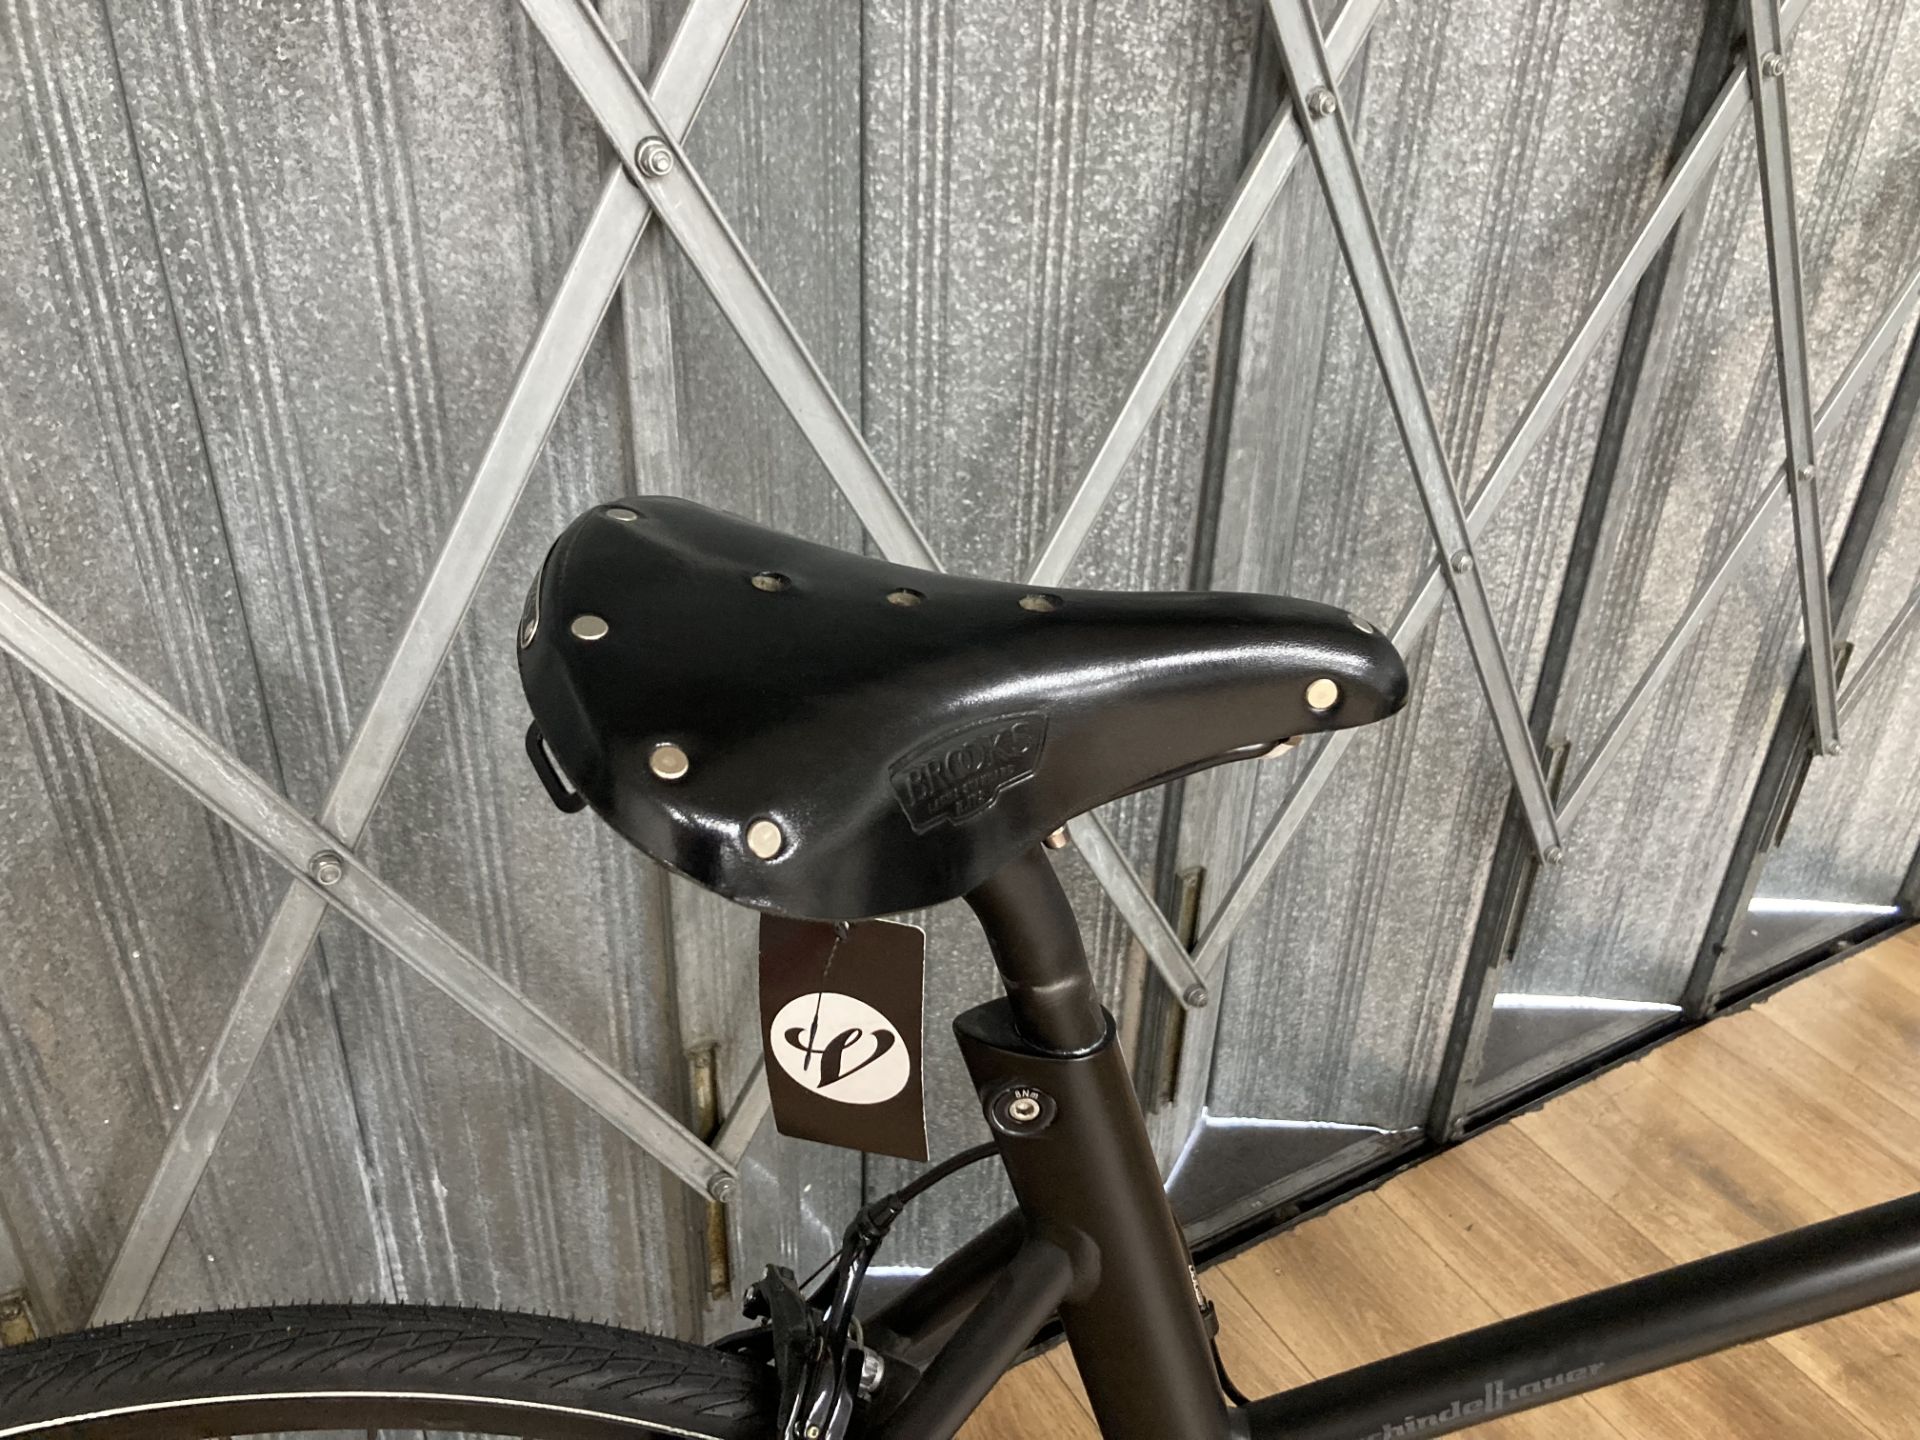 Schindelhauer Lotte 56 CM, Matt Black, 8 speed Alfine, 2018 No pedals - Image 3 of 4